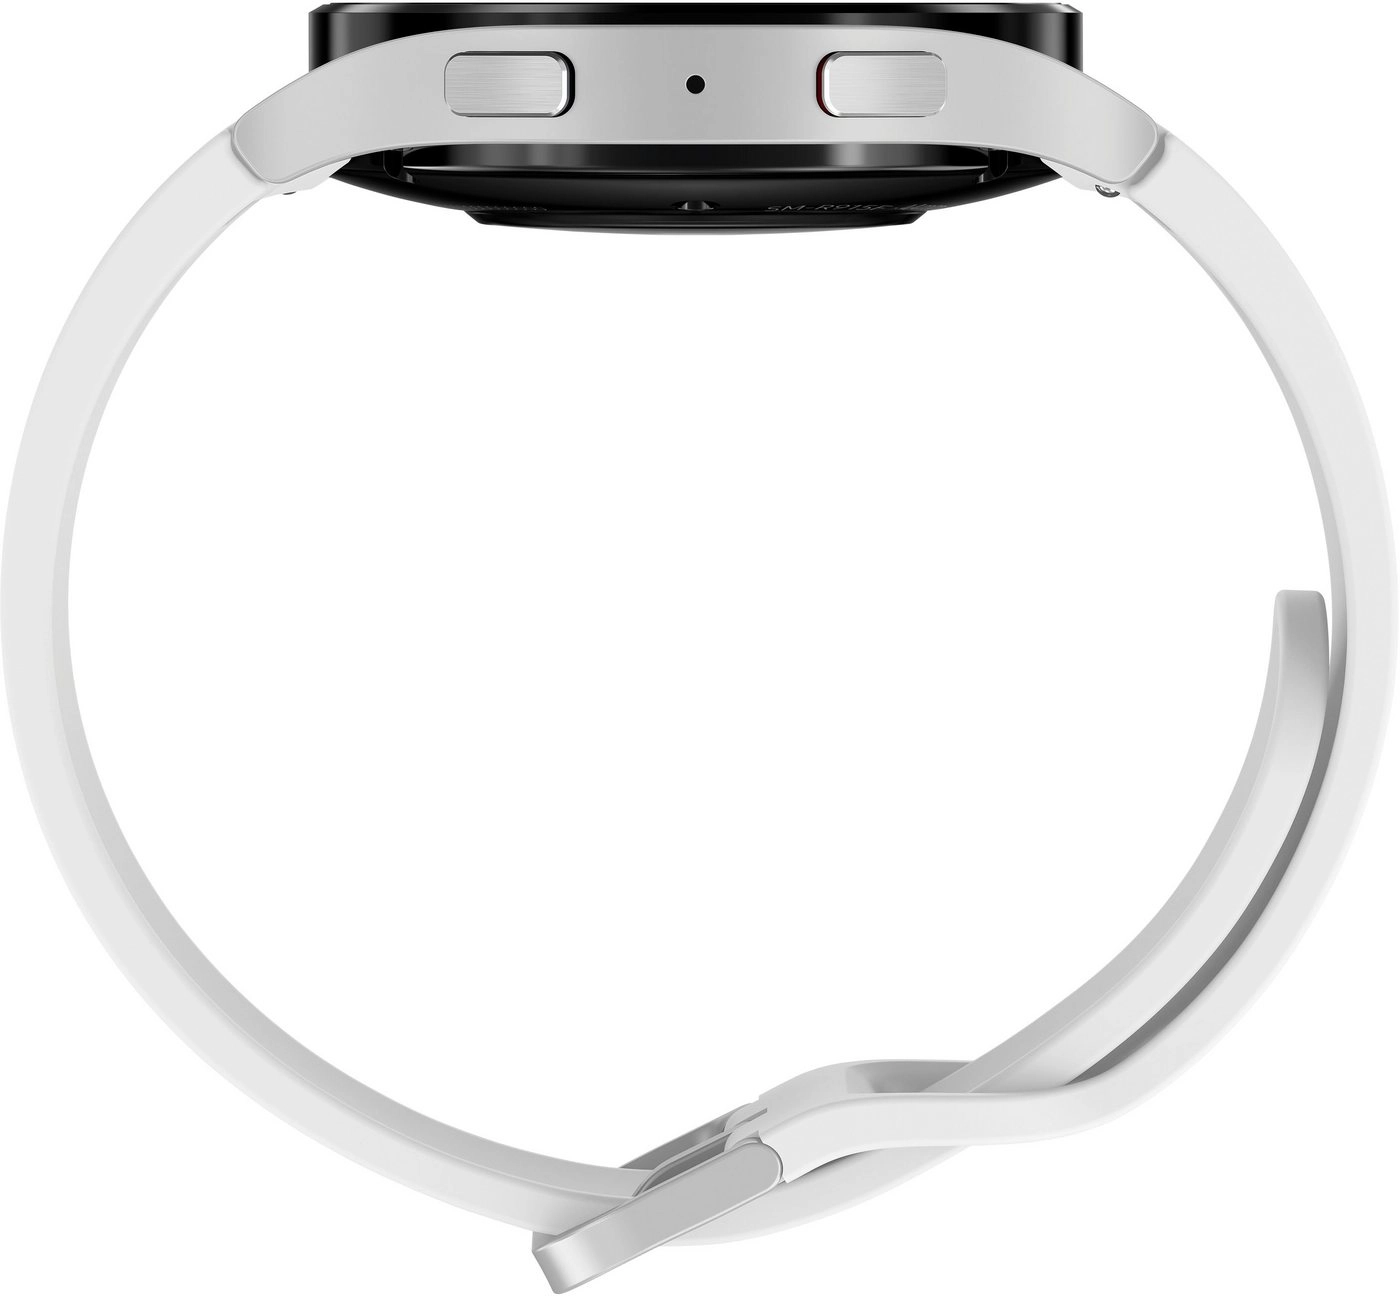 Samsung Galaxy Watch 5 LTE (44mm) in silber | Smartwatch | Bis zu 80 Stunden Akkulaufzeit | Wassergeschützt bis 5 ATM | Blutdruck-Messung | Sturzerkennung